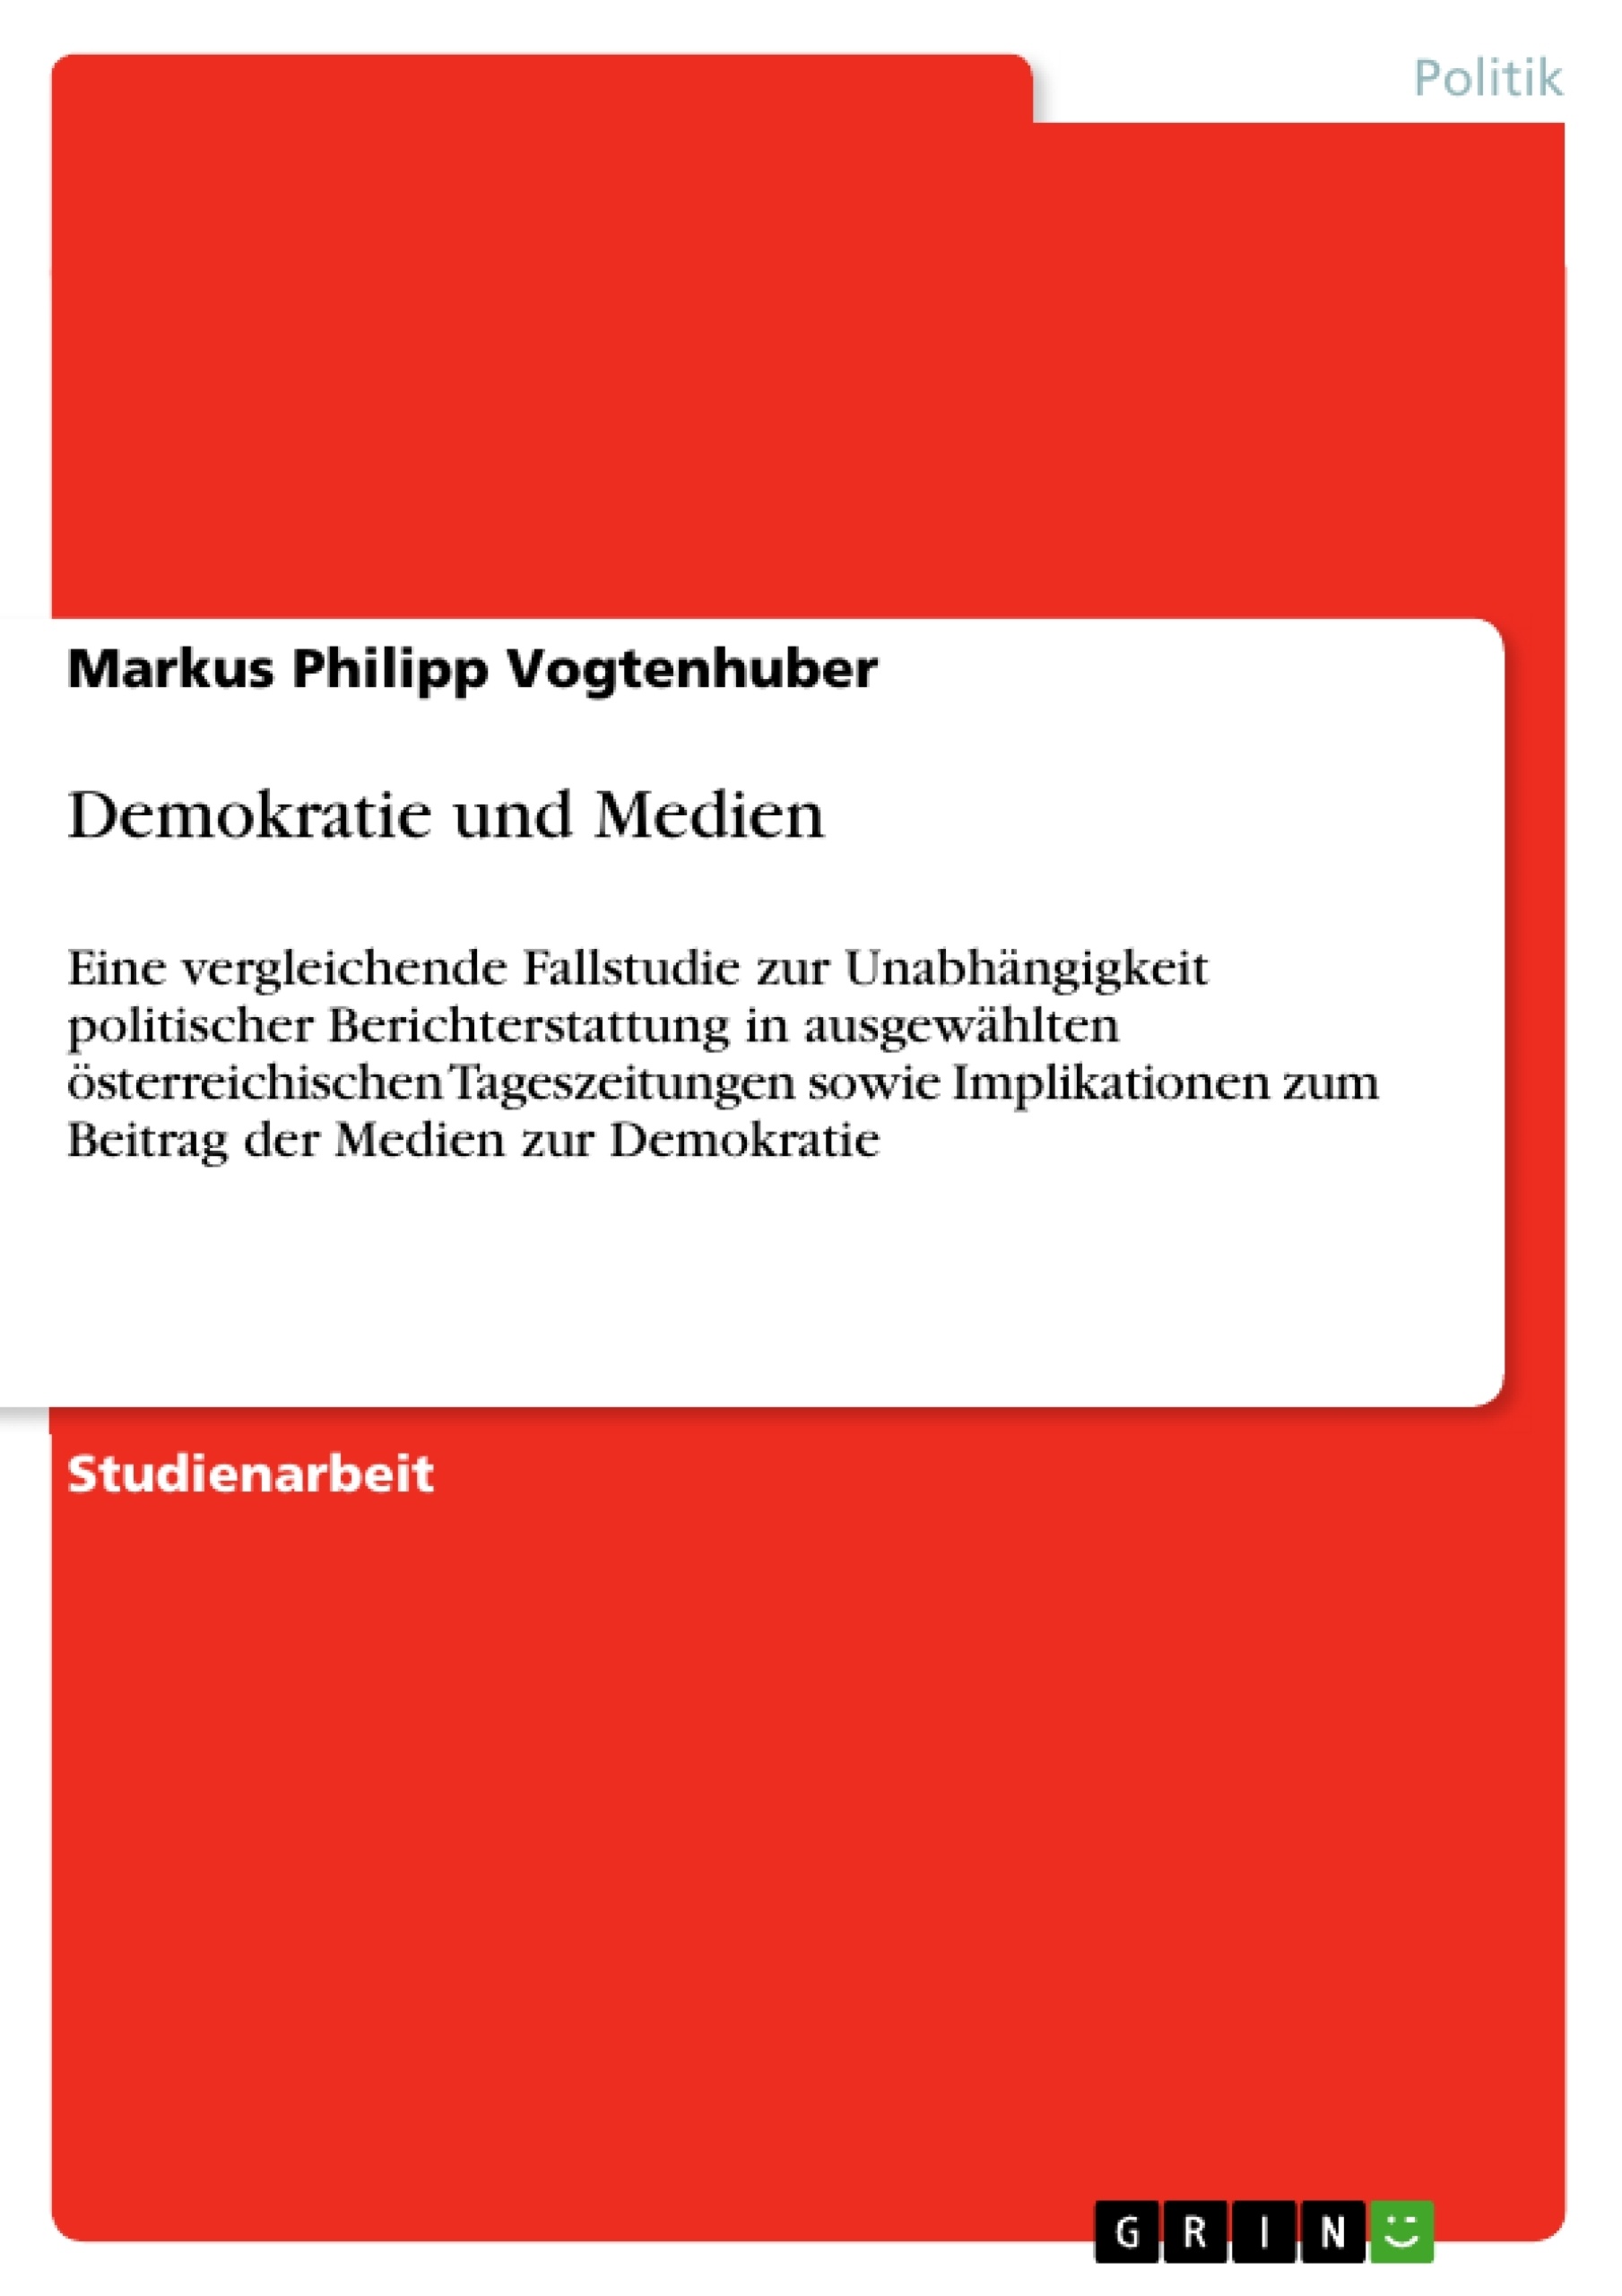 Title: Demokratie und Medien